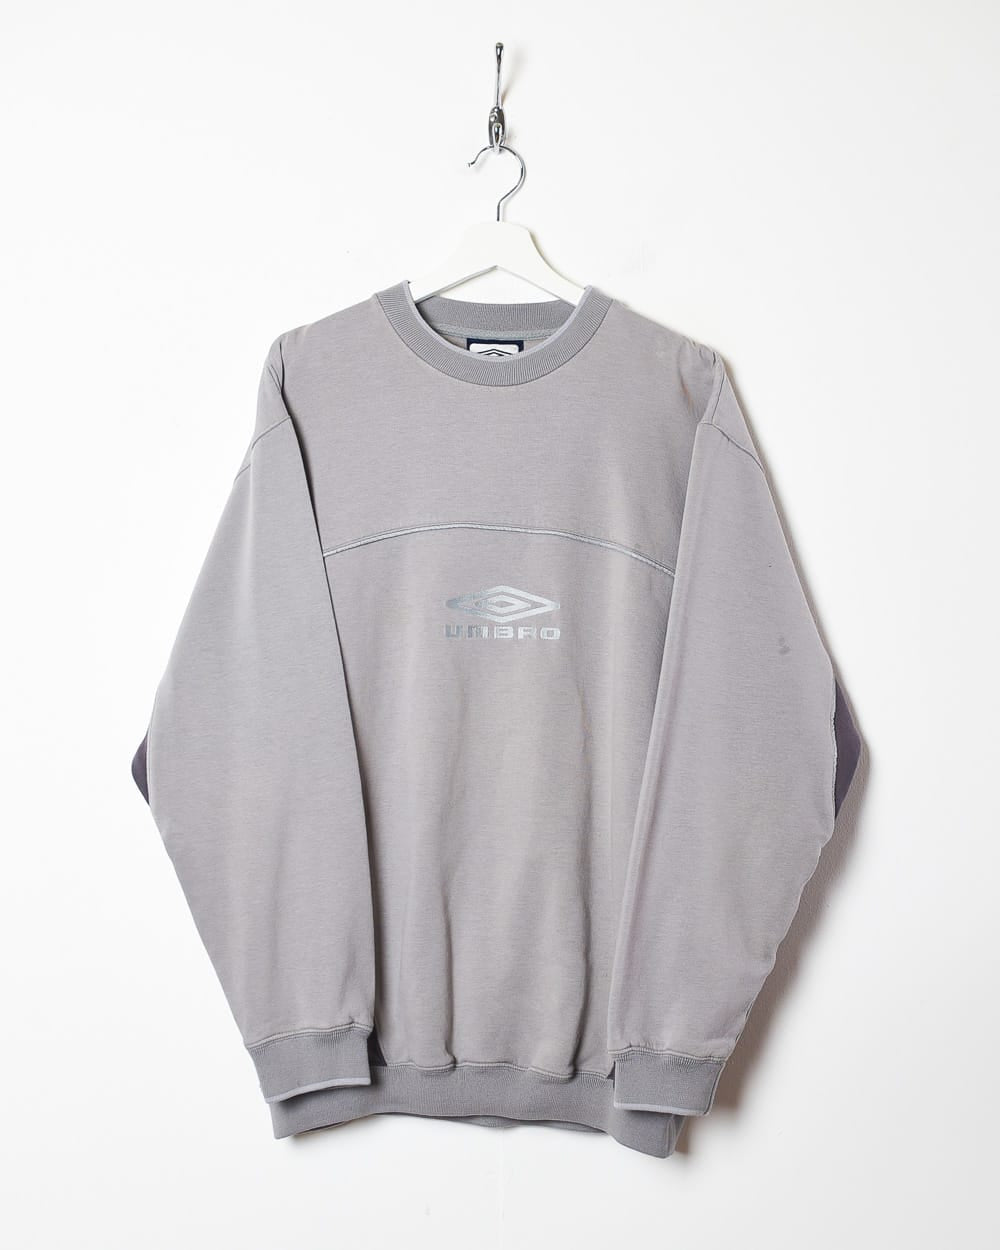 Grey Umbro Sweatshirt - X-Large